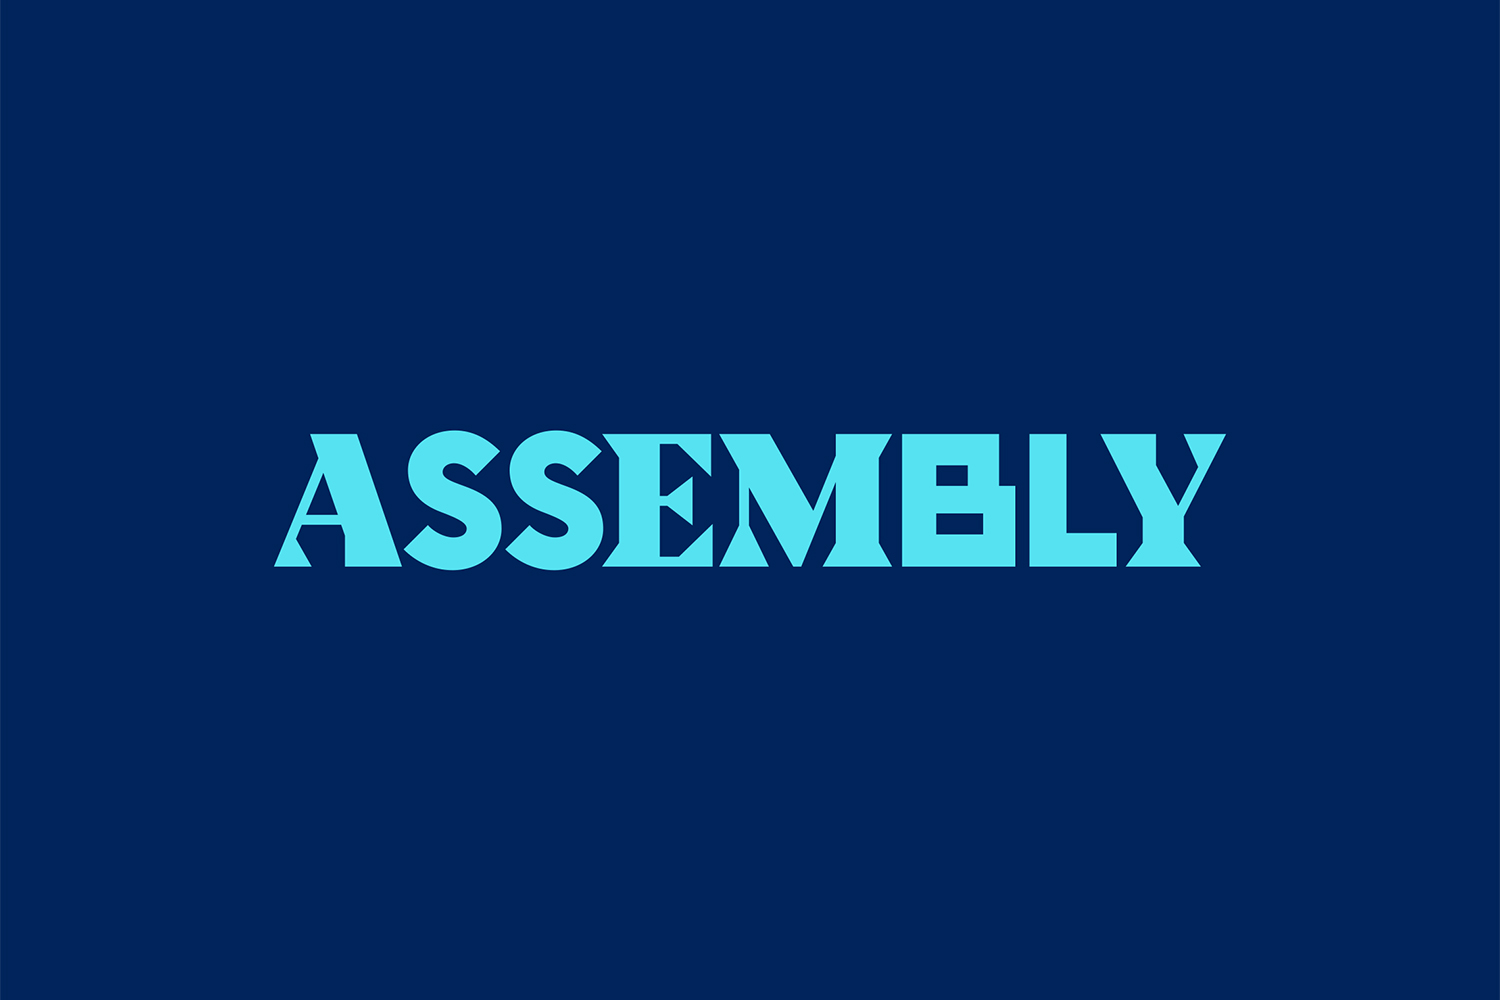 Font Assembly